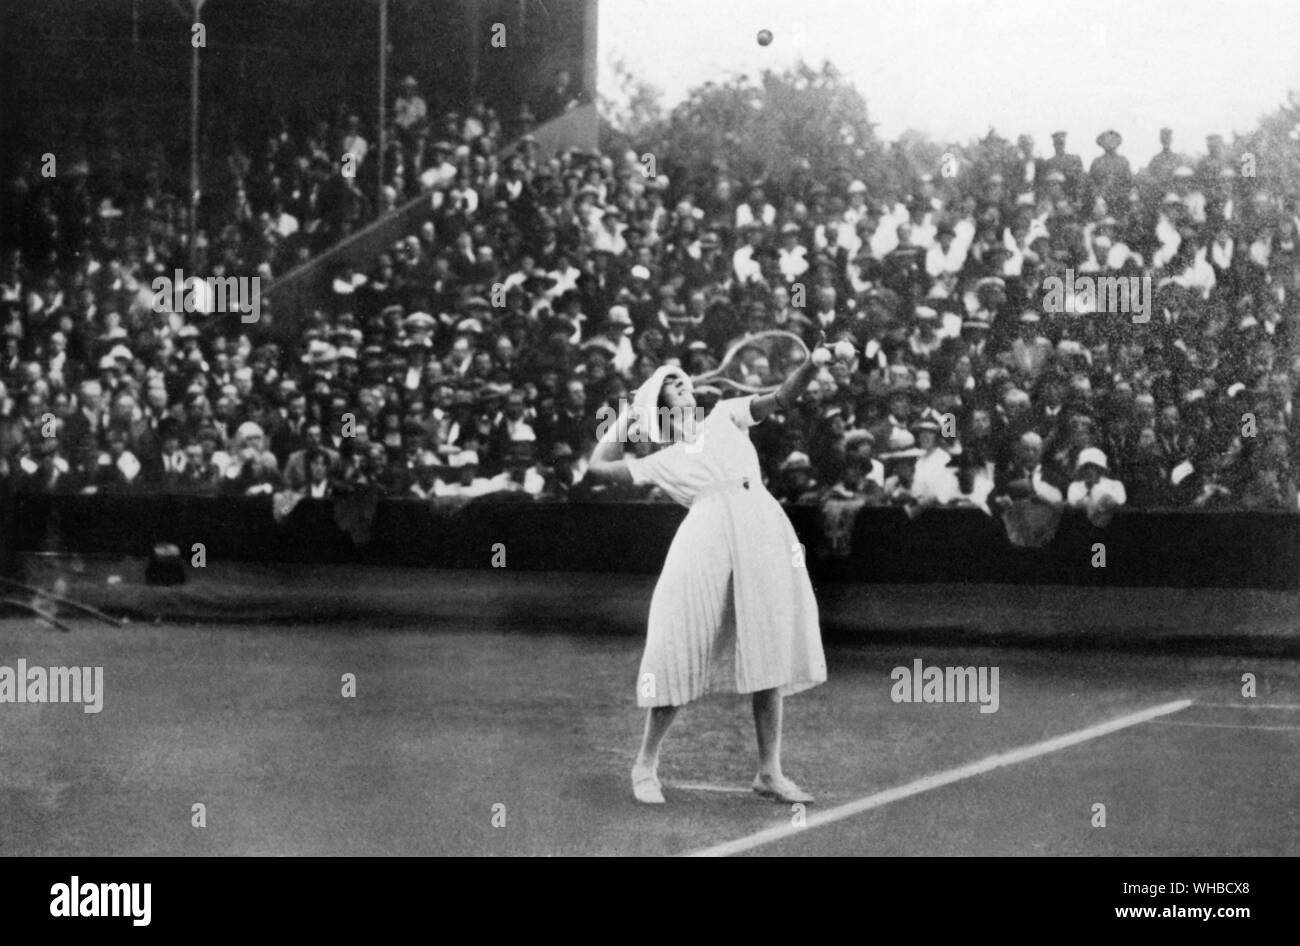 En 1919, Suzanne Lenglen Suzanne Lenglen - Rachel Flore (24 mai 1899 - 4 juillet 1938) était un joueur de tennis français qui a remporté 31 titres du Grand Chelem à partir de 1914 à travers 1926. Un athlète qui fait autorité, flamboyant, elle a été la première femme célébrité tennis et l'une des premières stars du sport féminin, nommé La Divine (le divin) par la presse française.. Banque D'Images